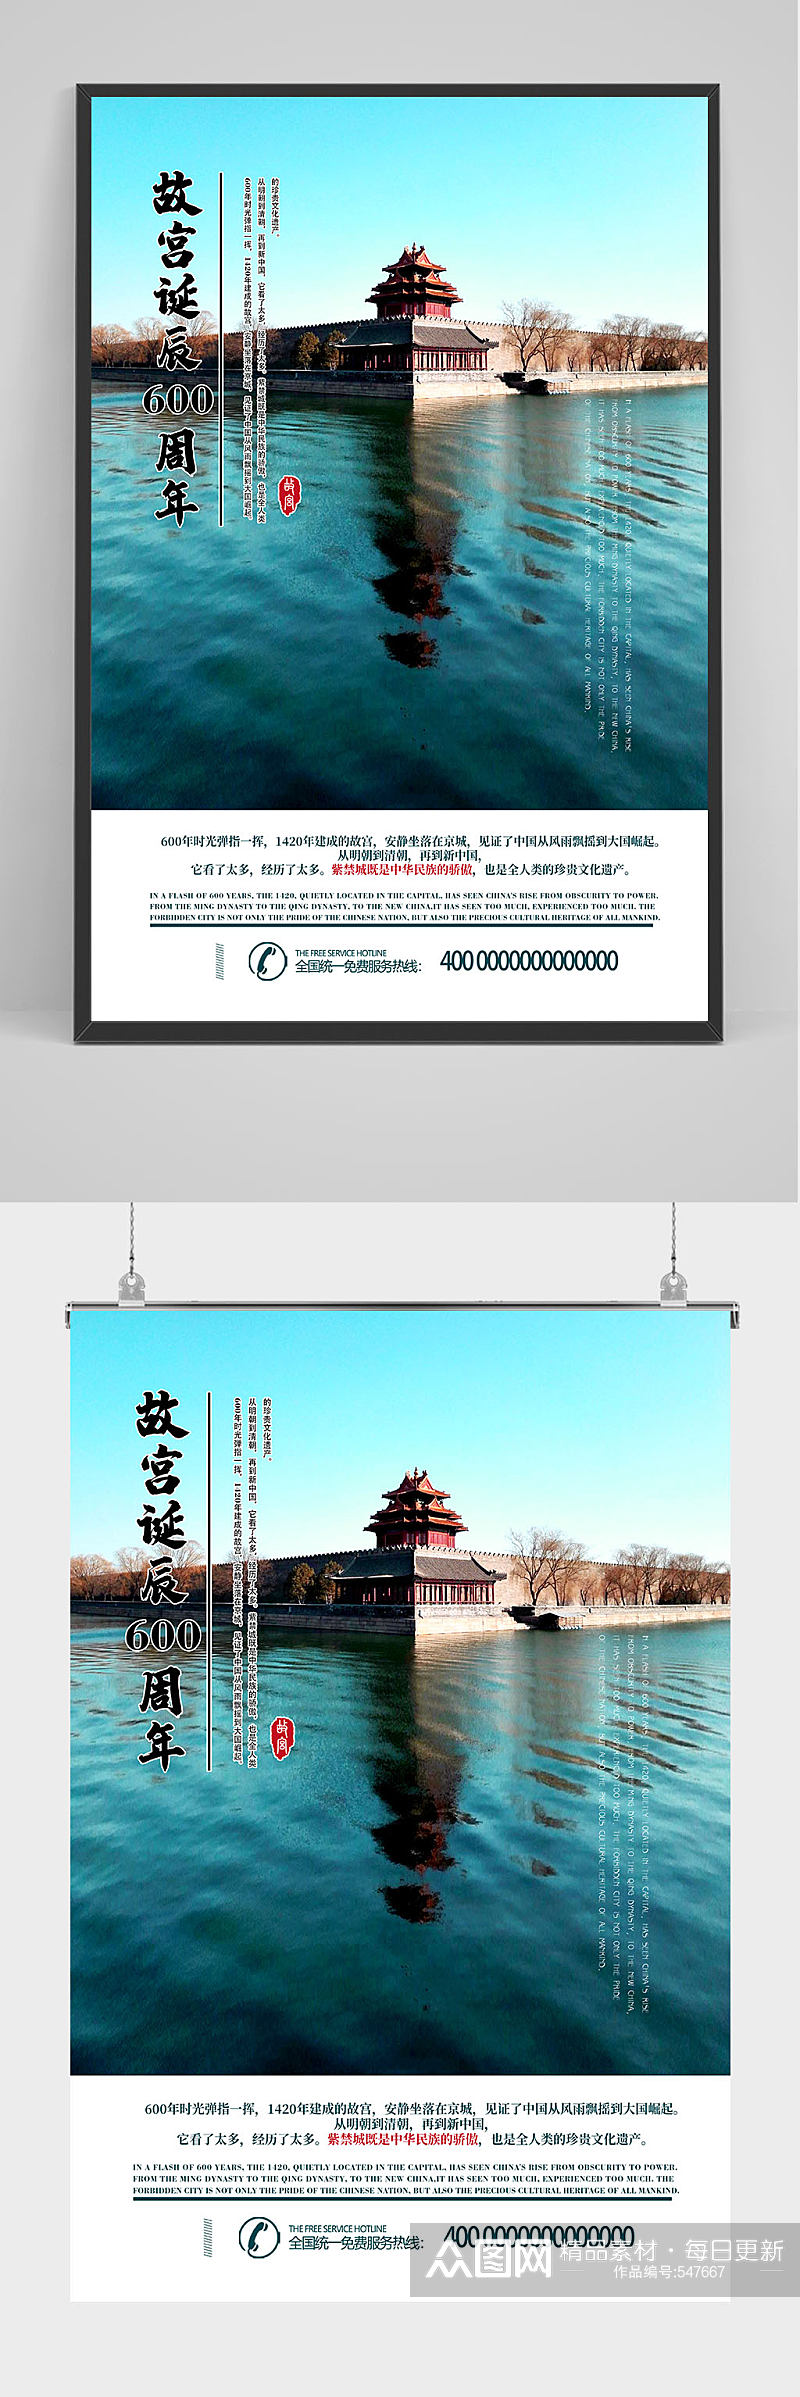 精品传统文化故宫海报设计素材